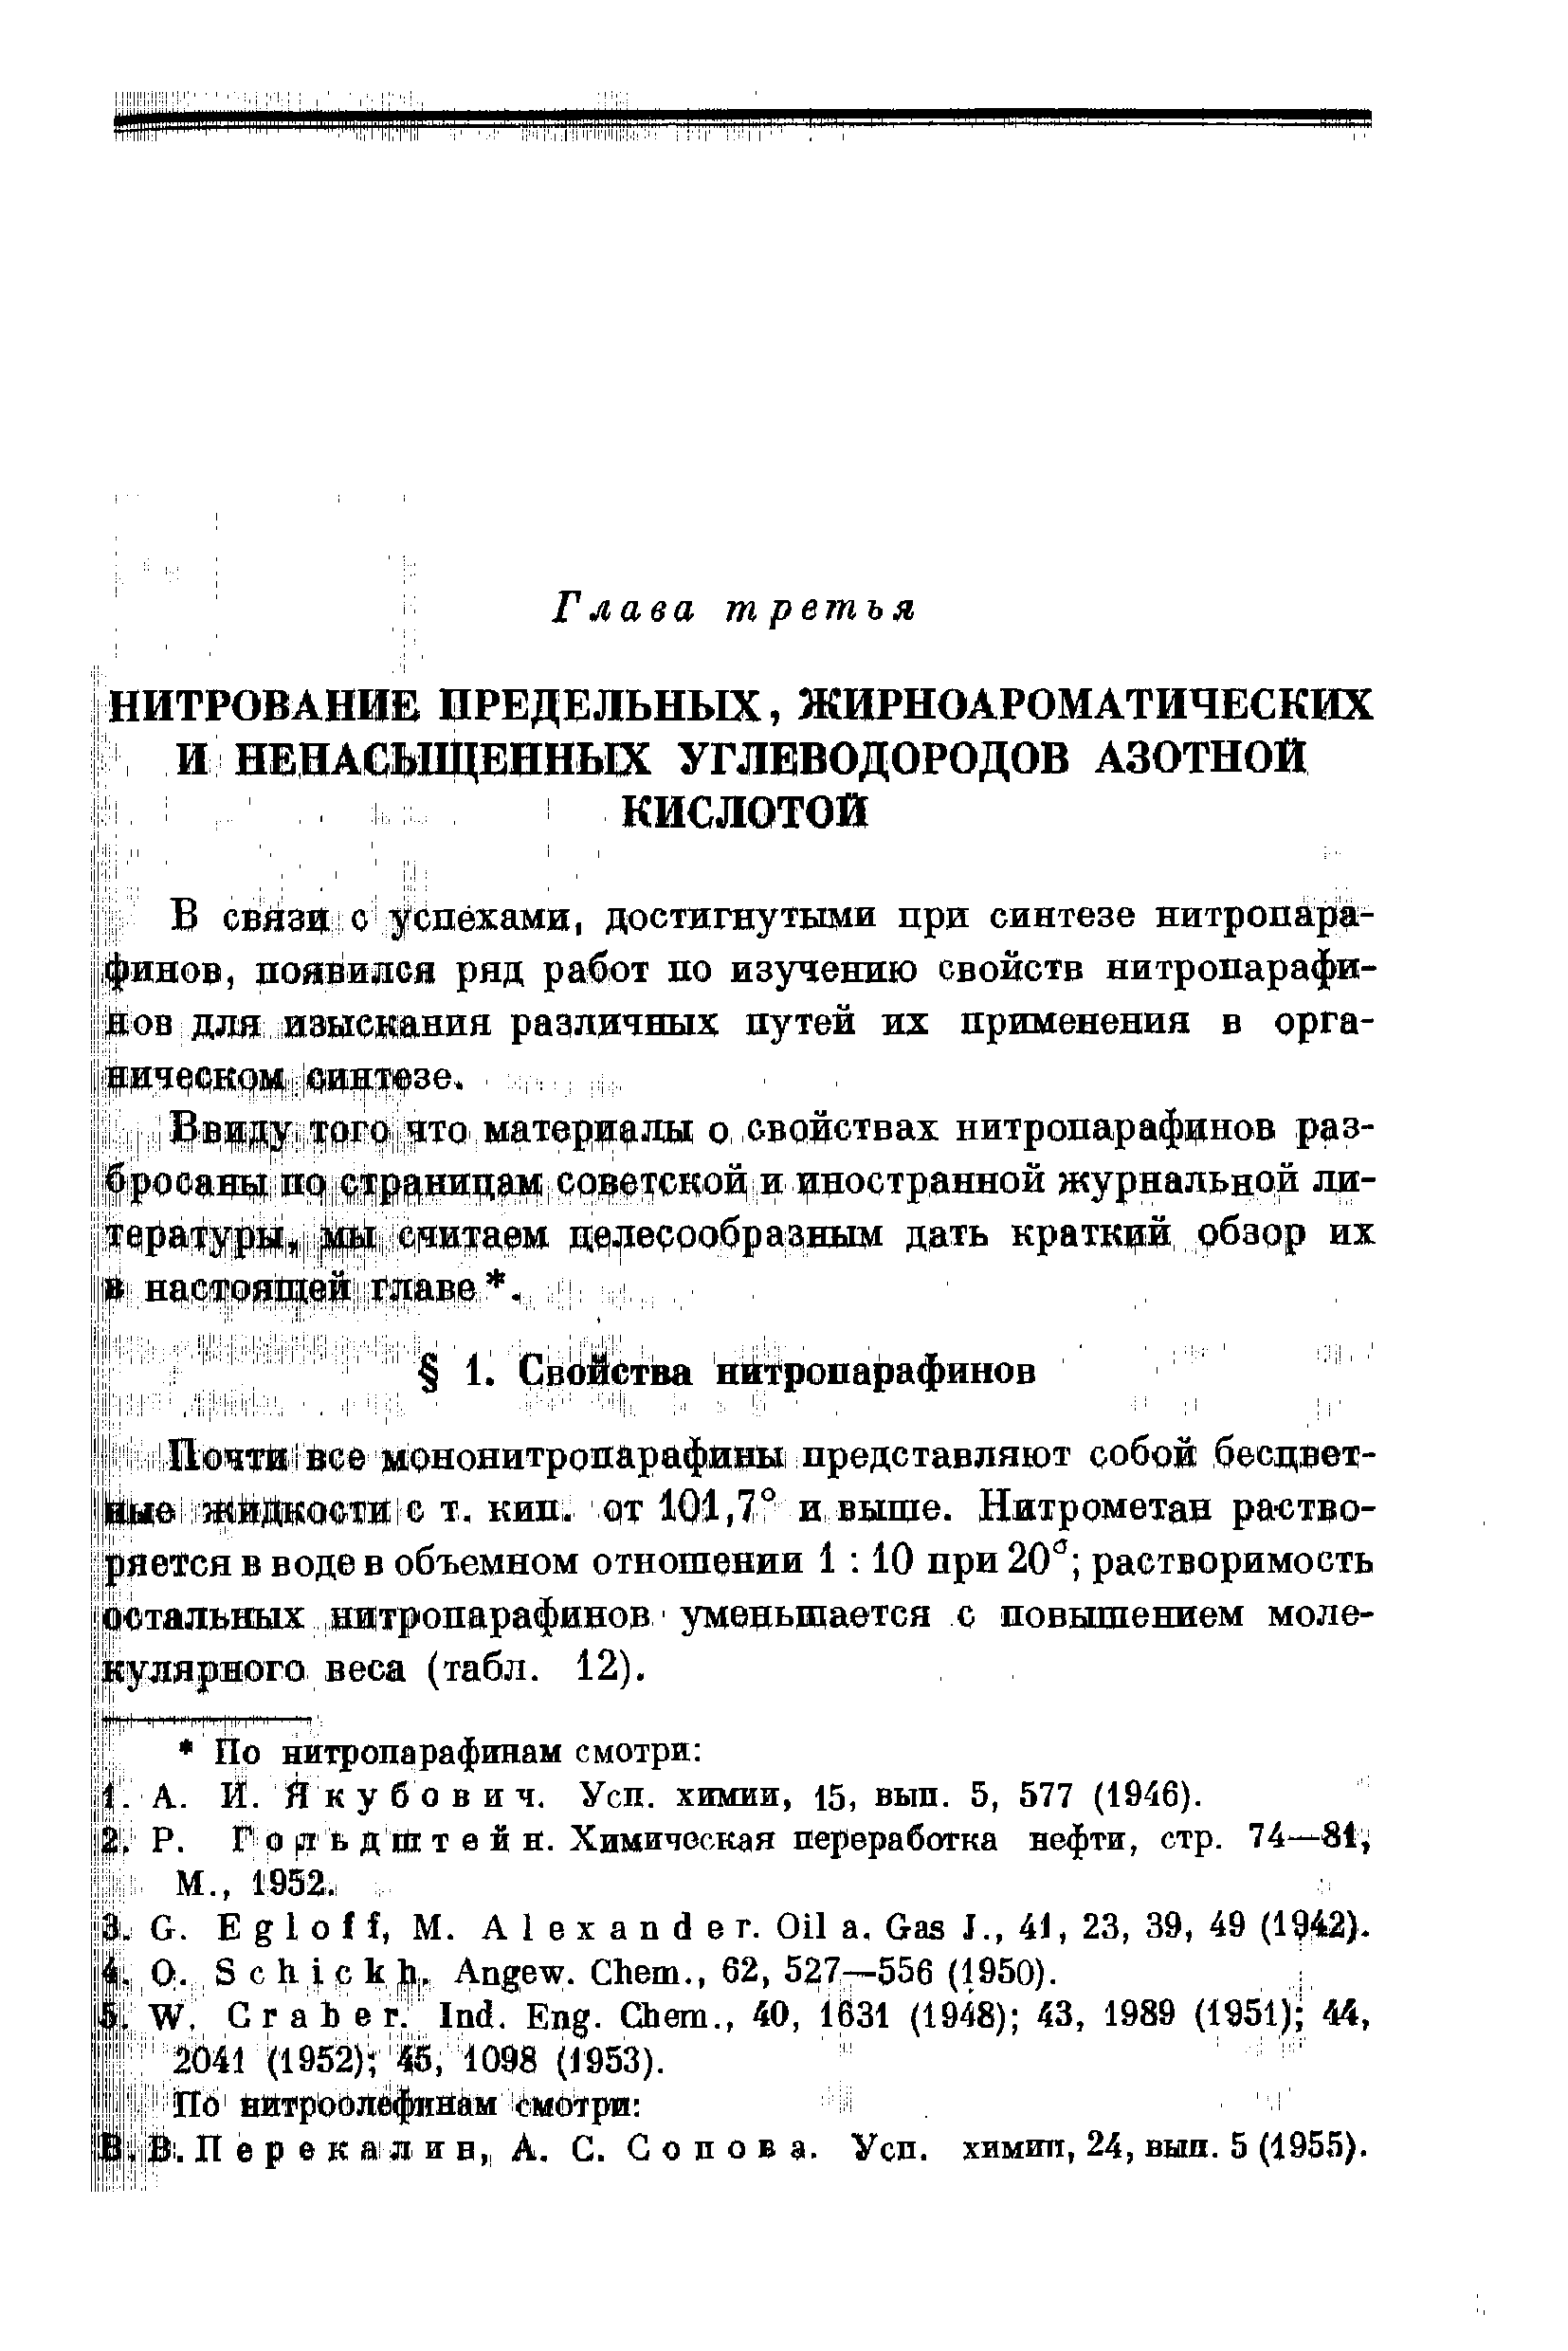 Г о Л ь й йс т 0 й н. Химическая переработка нефти, стр. 74—81 М., 1952.